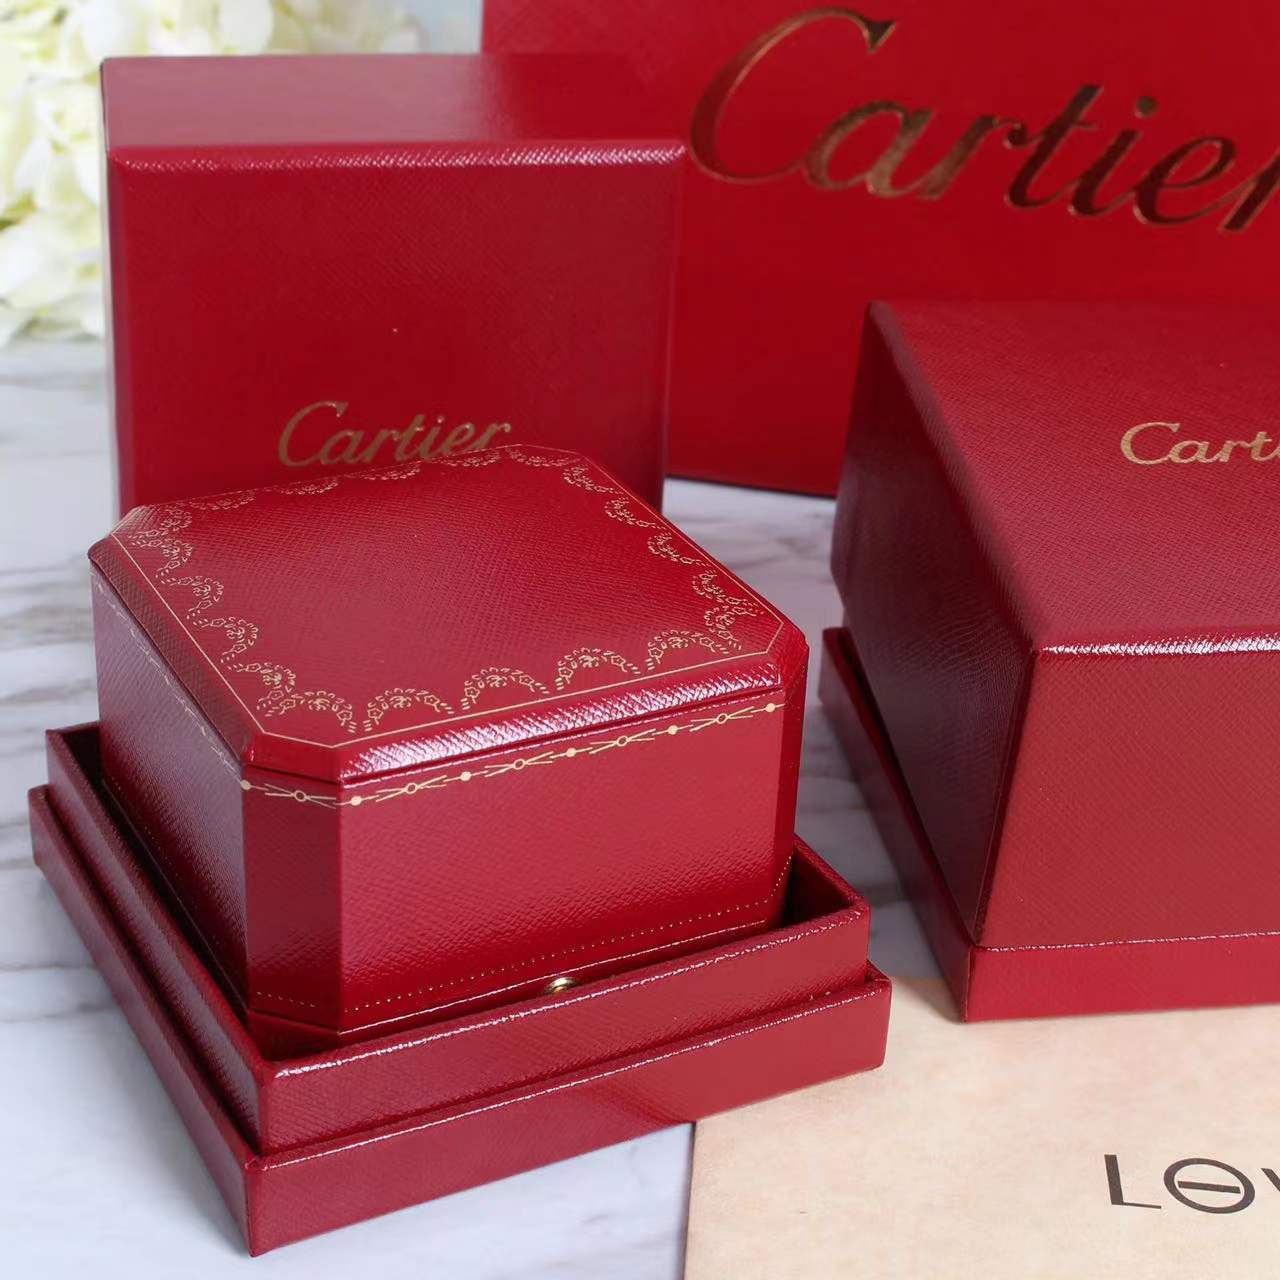 1:1 Cartier bracelet box 1 set